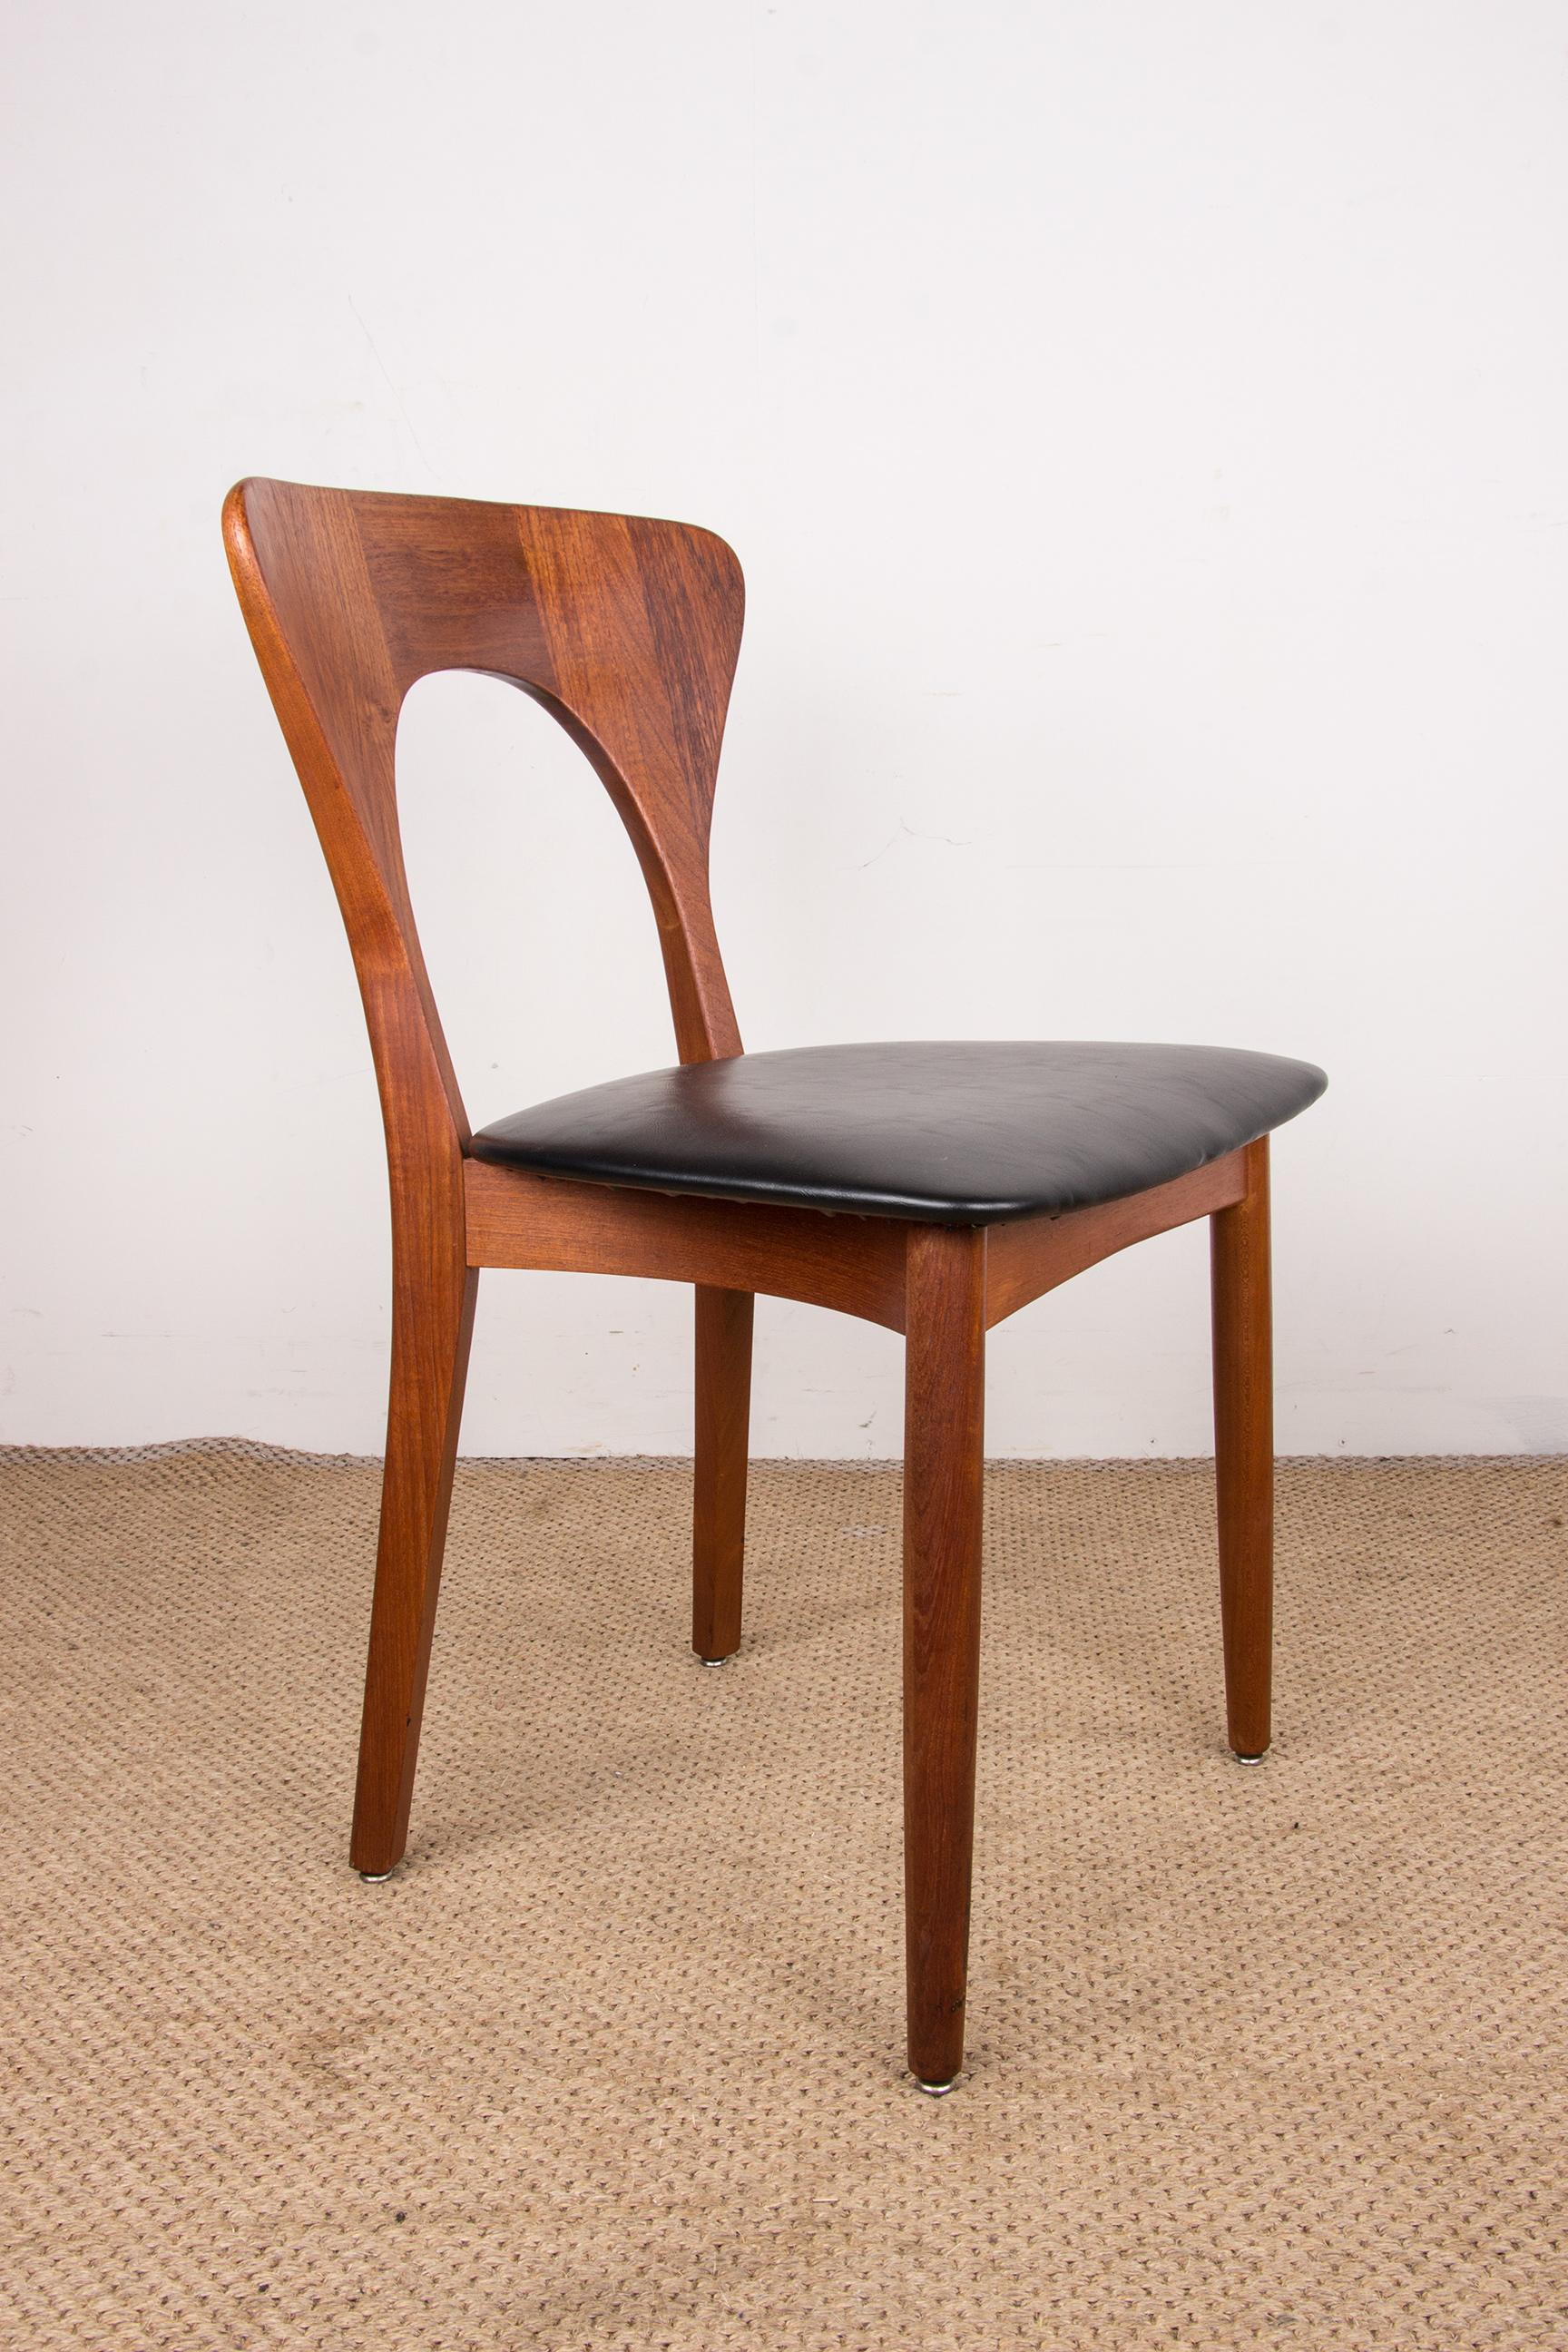 Series of 6 Danish chairs in Teak and skai, Peter model by Niels Koefoed 1960. 1